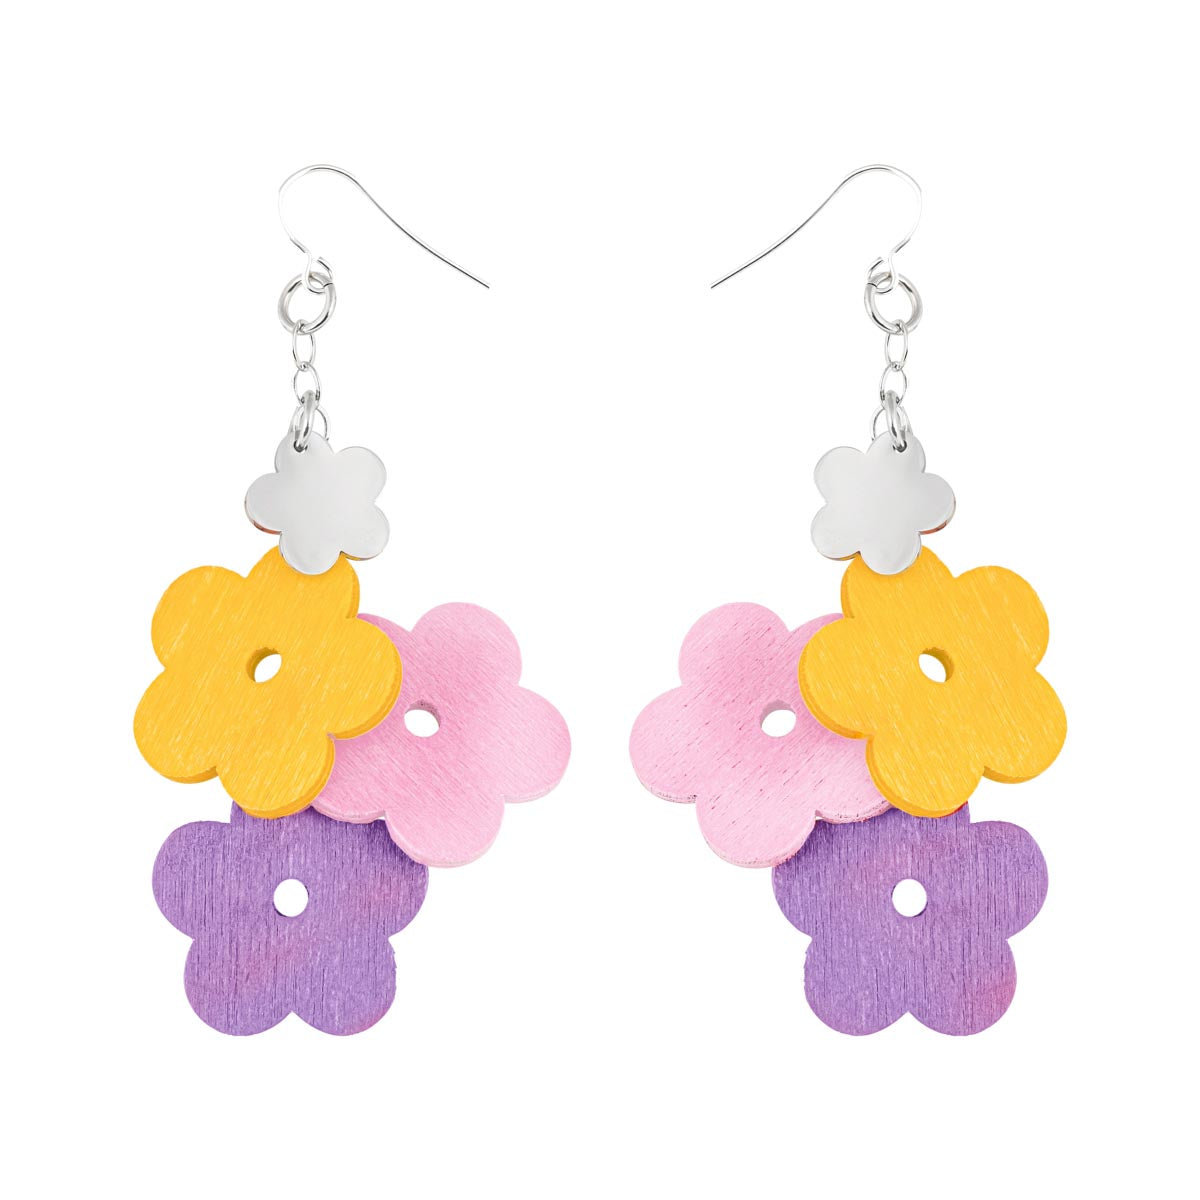 Kukkaniitty earrings, purple, pink, and yellow